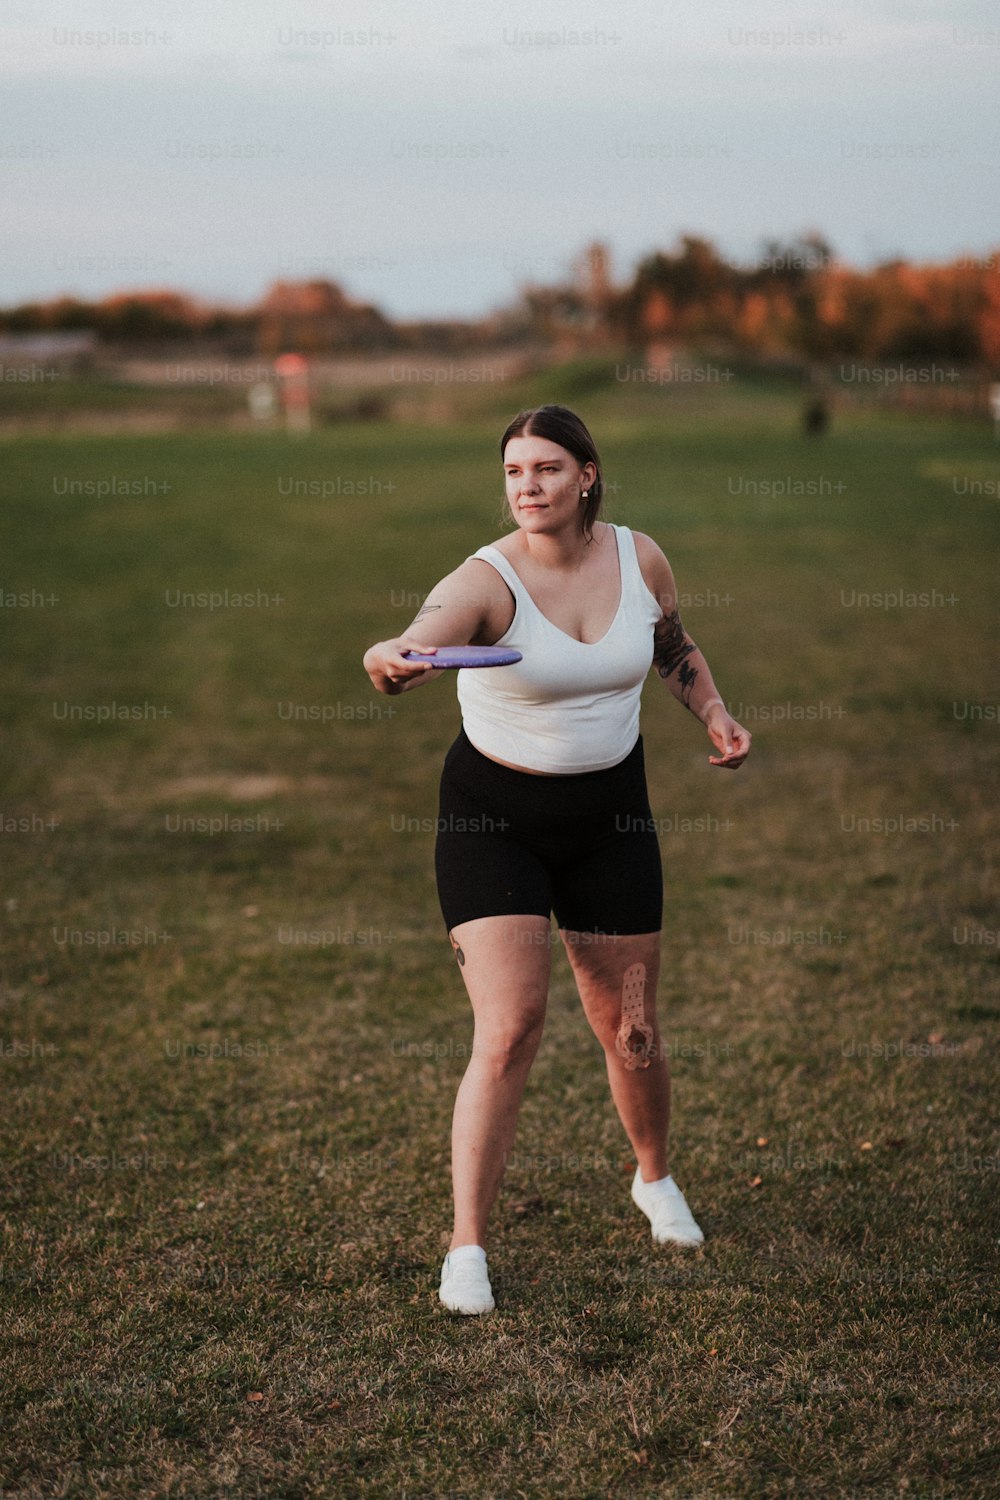 una mujer de pie en un campo sosteniendo un frisbee